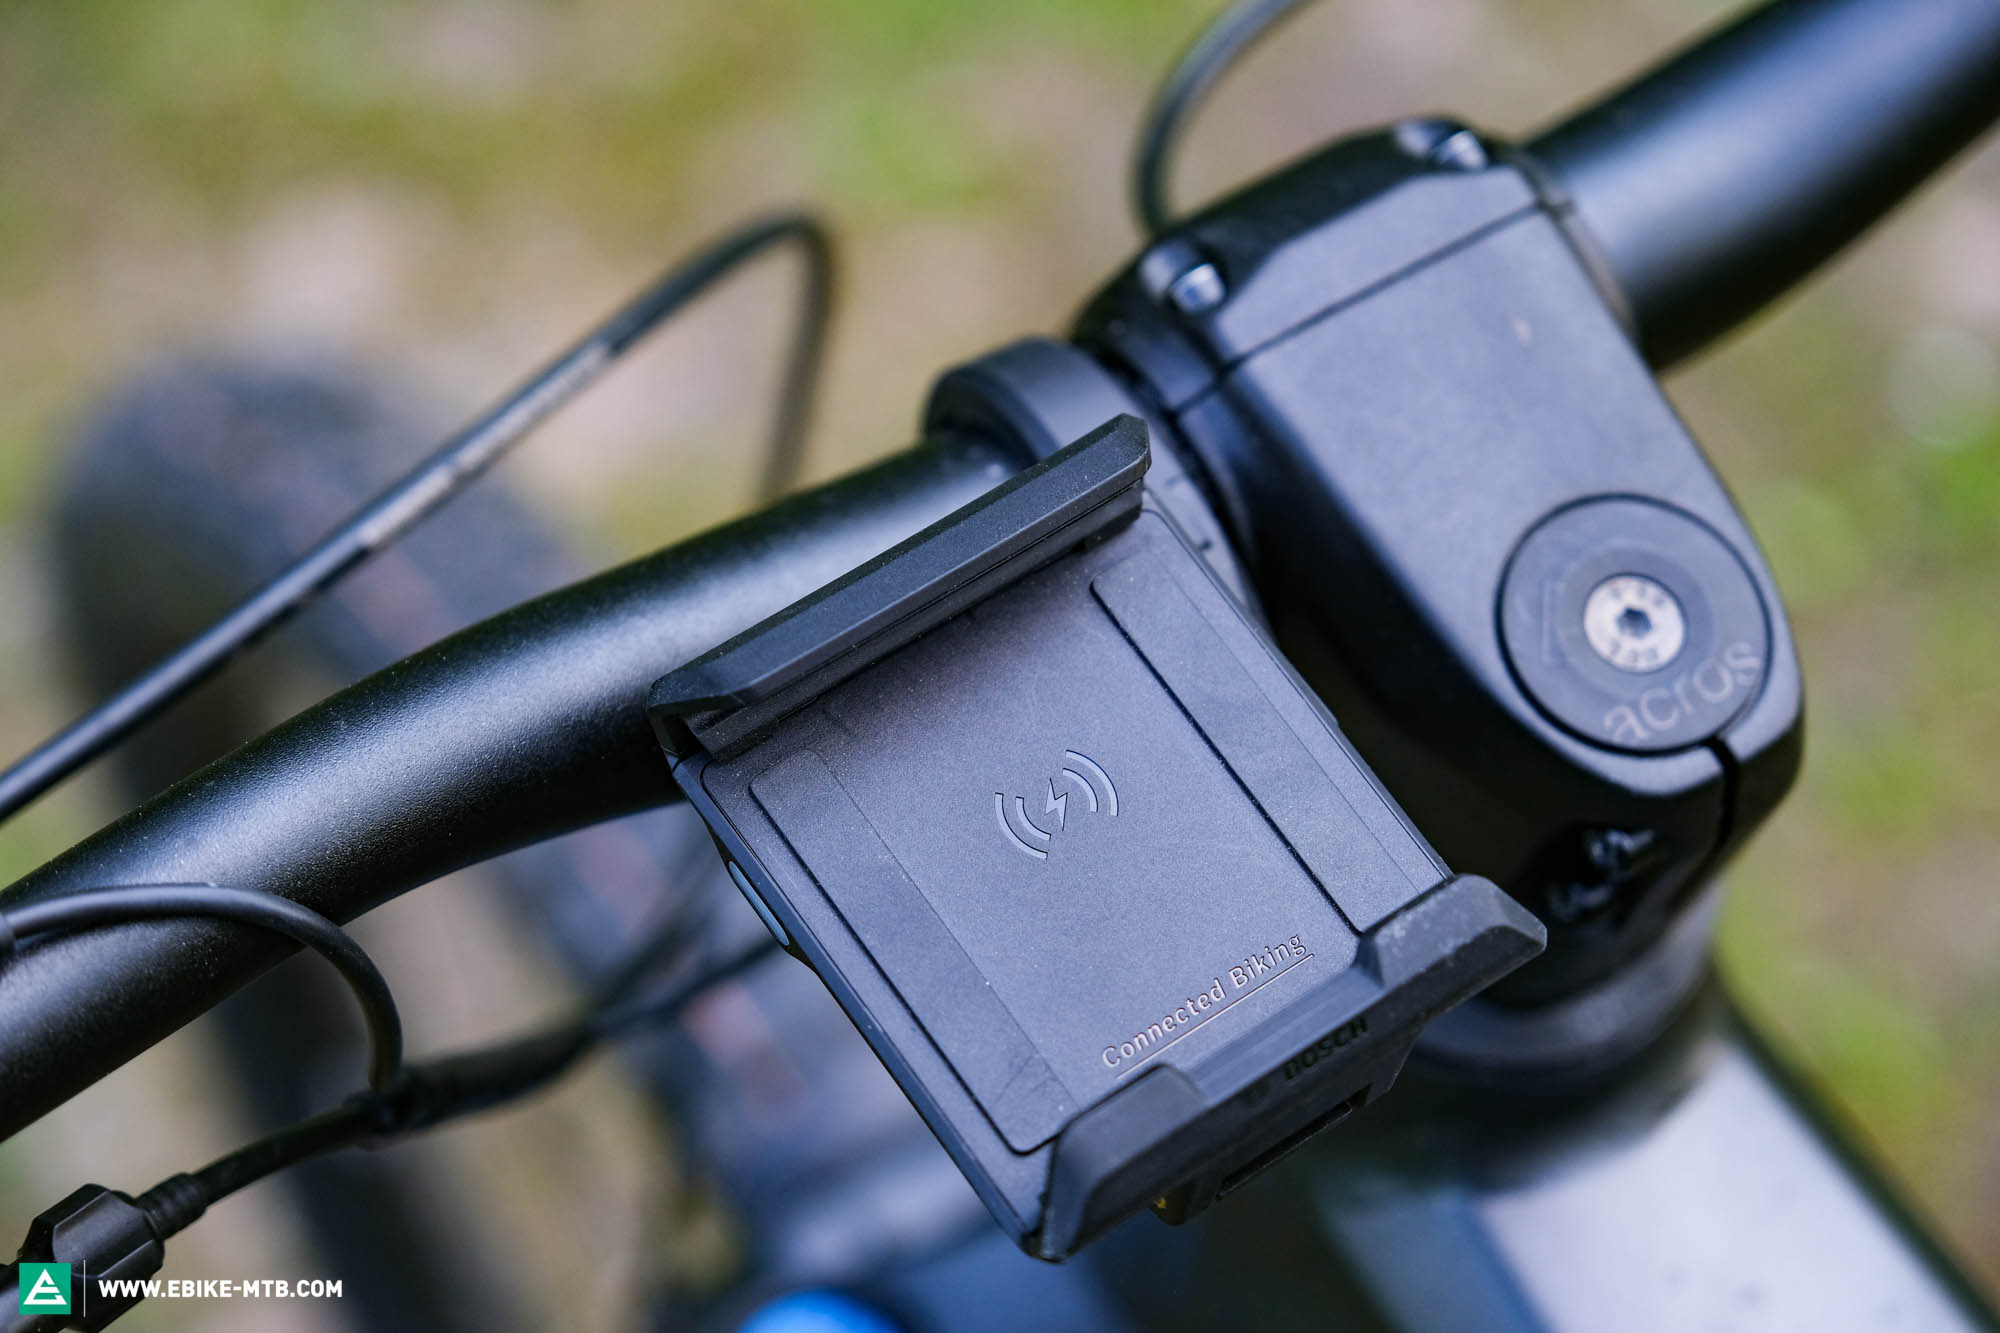 Das neue Bosch SmartphoneGrip - Die clevere Smartphone-Halterung für  Bosch-E-Bikes im Test